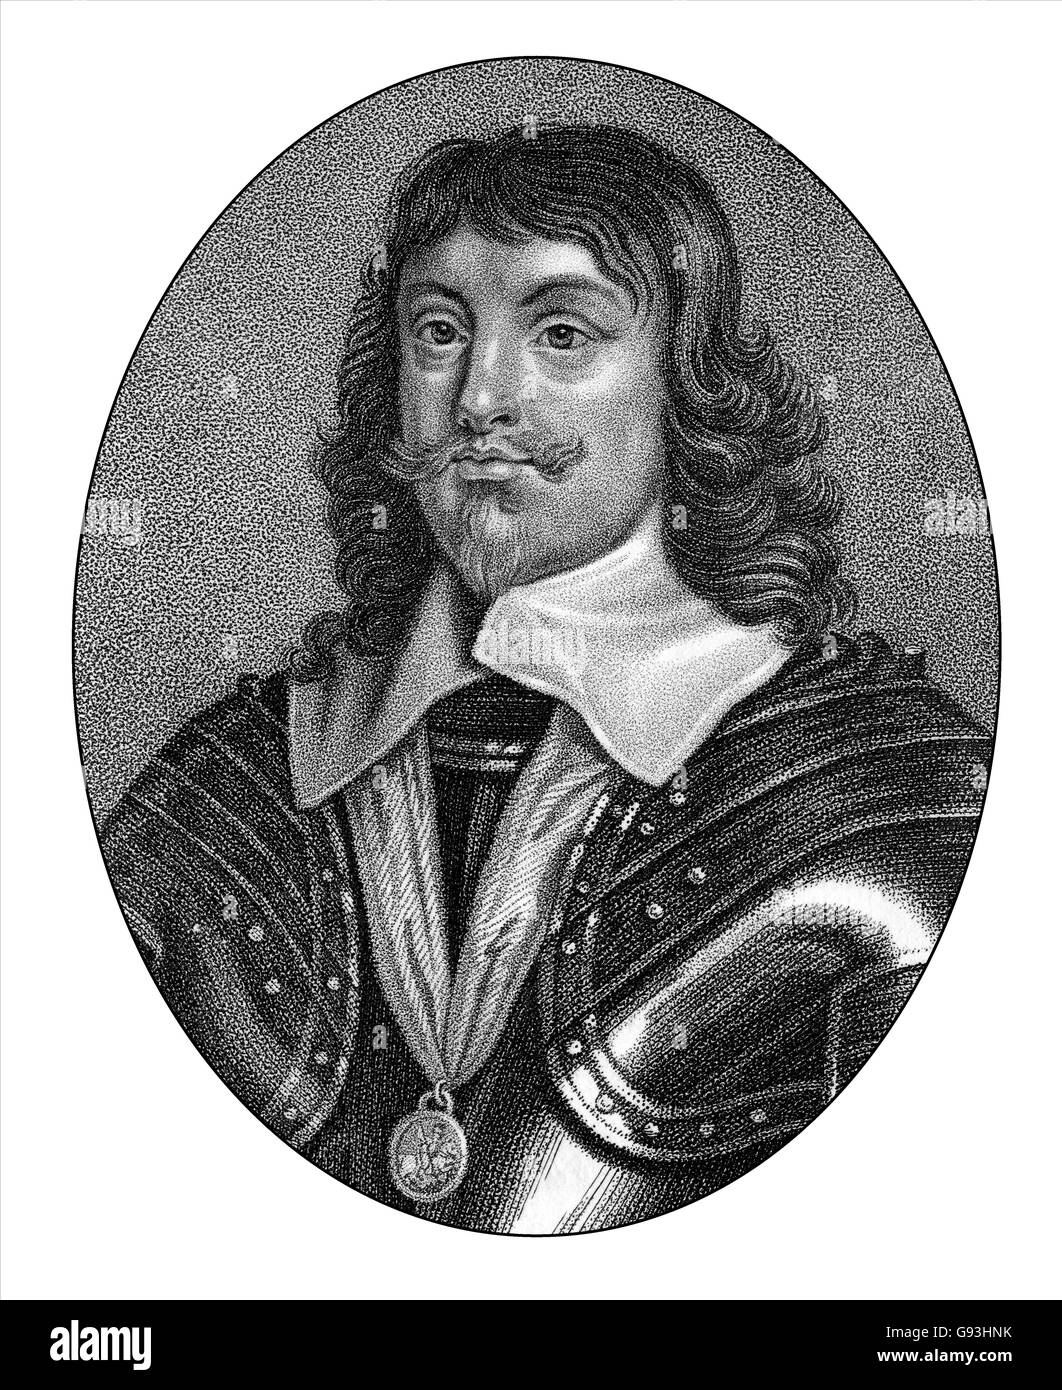 James Hamilton, 1er duc de Hamilton, en 1606-1649, un noble écossais, chef politique et militaire Banque D'Images